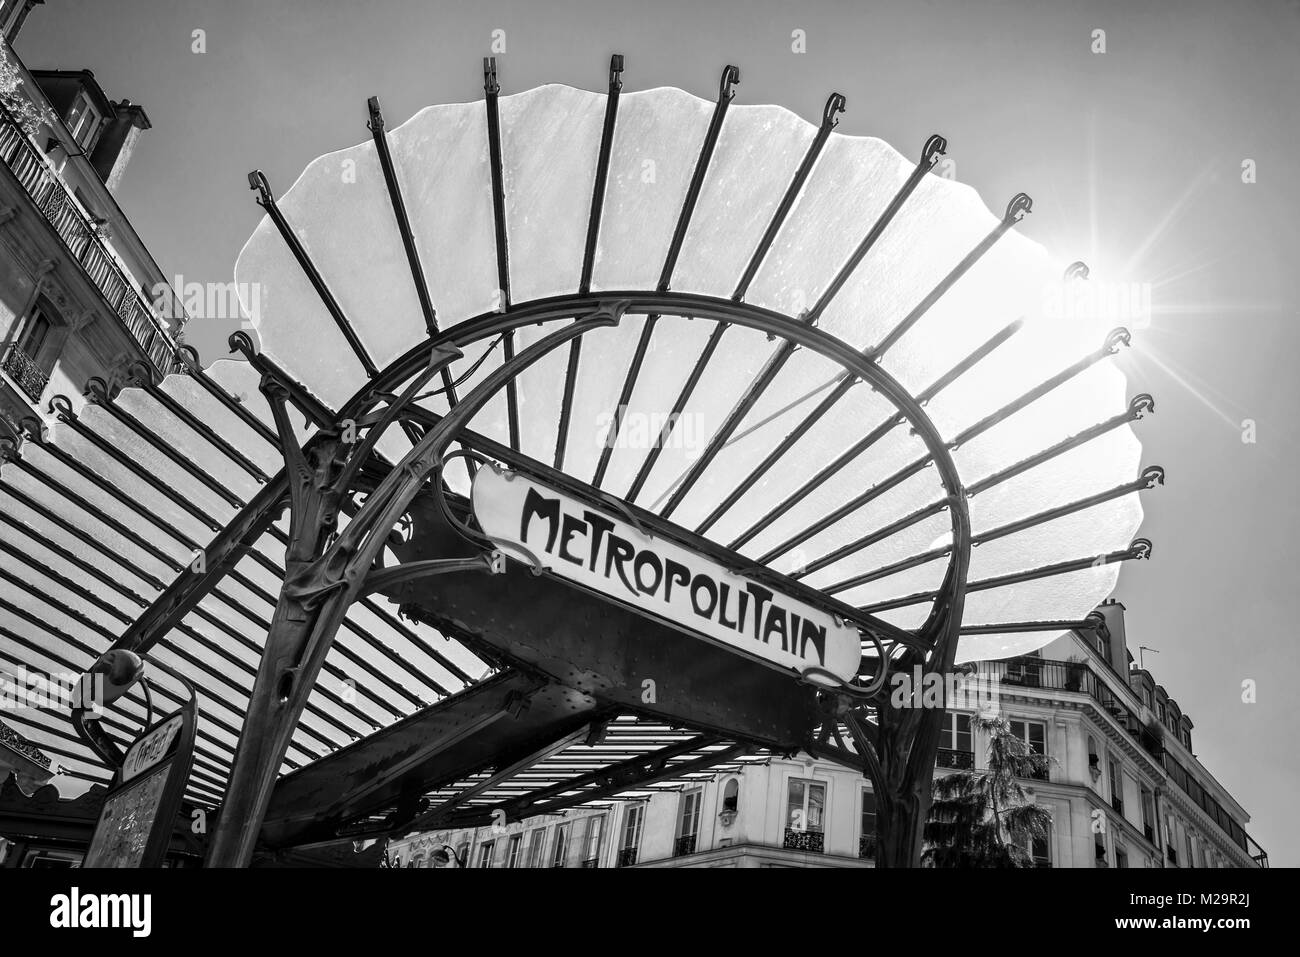 Metropolitain signe art nouveau avec un toit en verre à Paris France, noir et blanc Banque D'Images